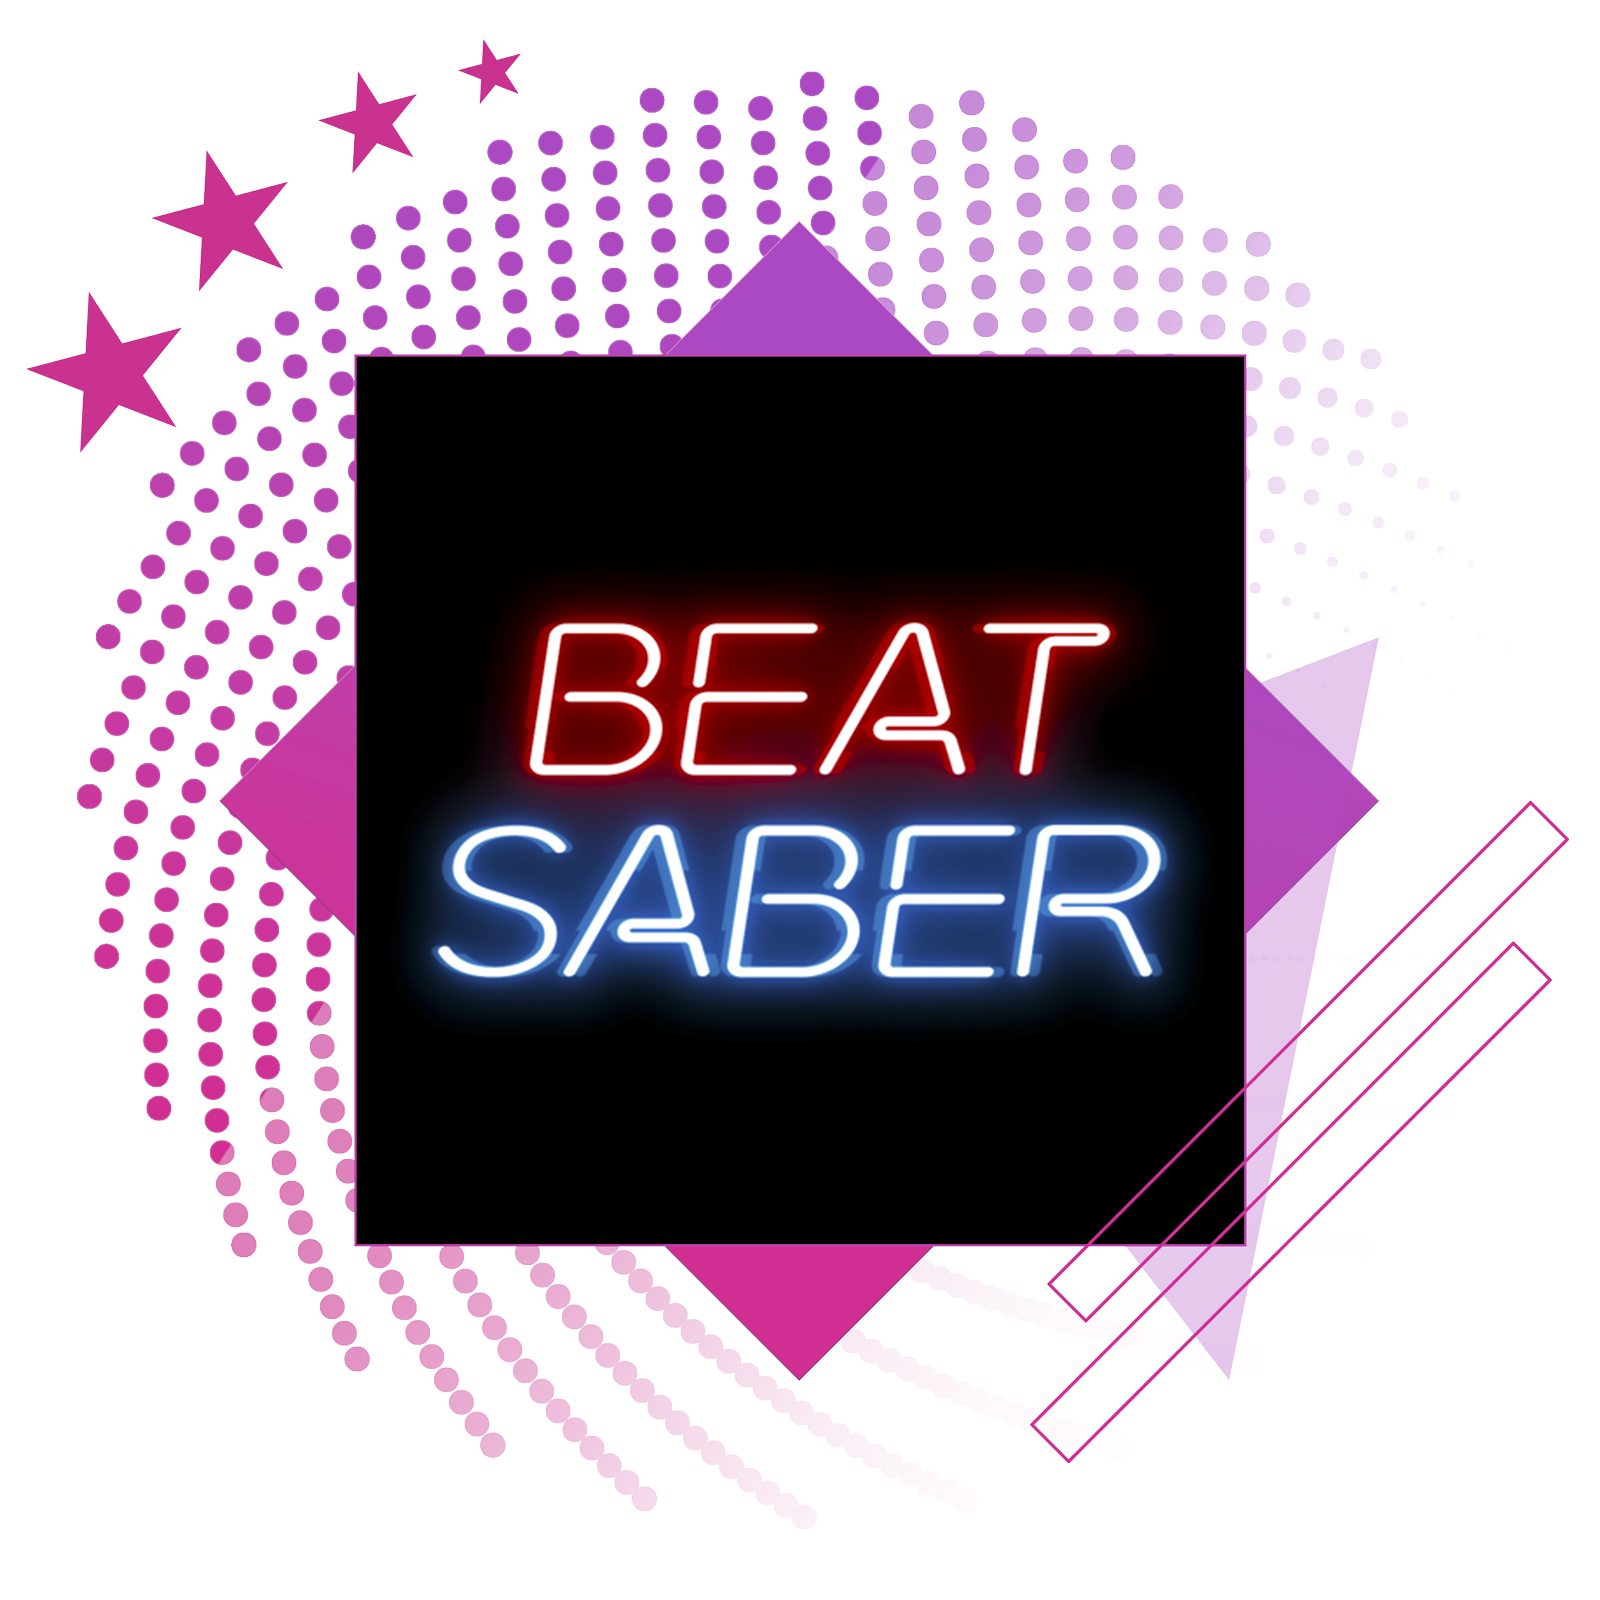 Най-добрите ритъм игри представят иконографско изображение от Beat Saber.